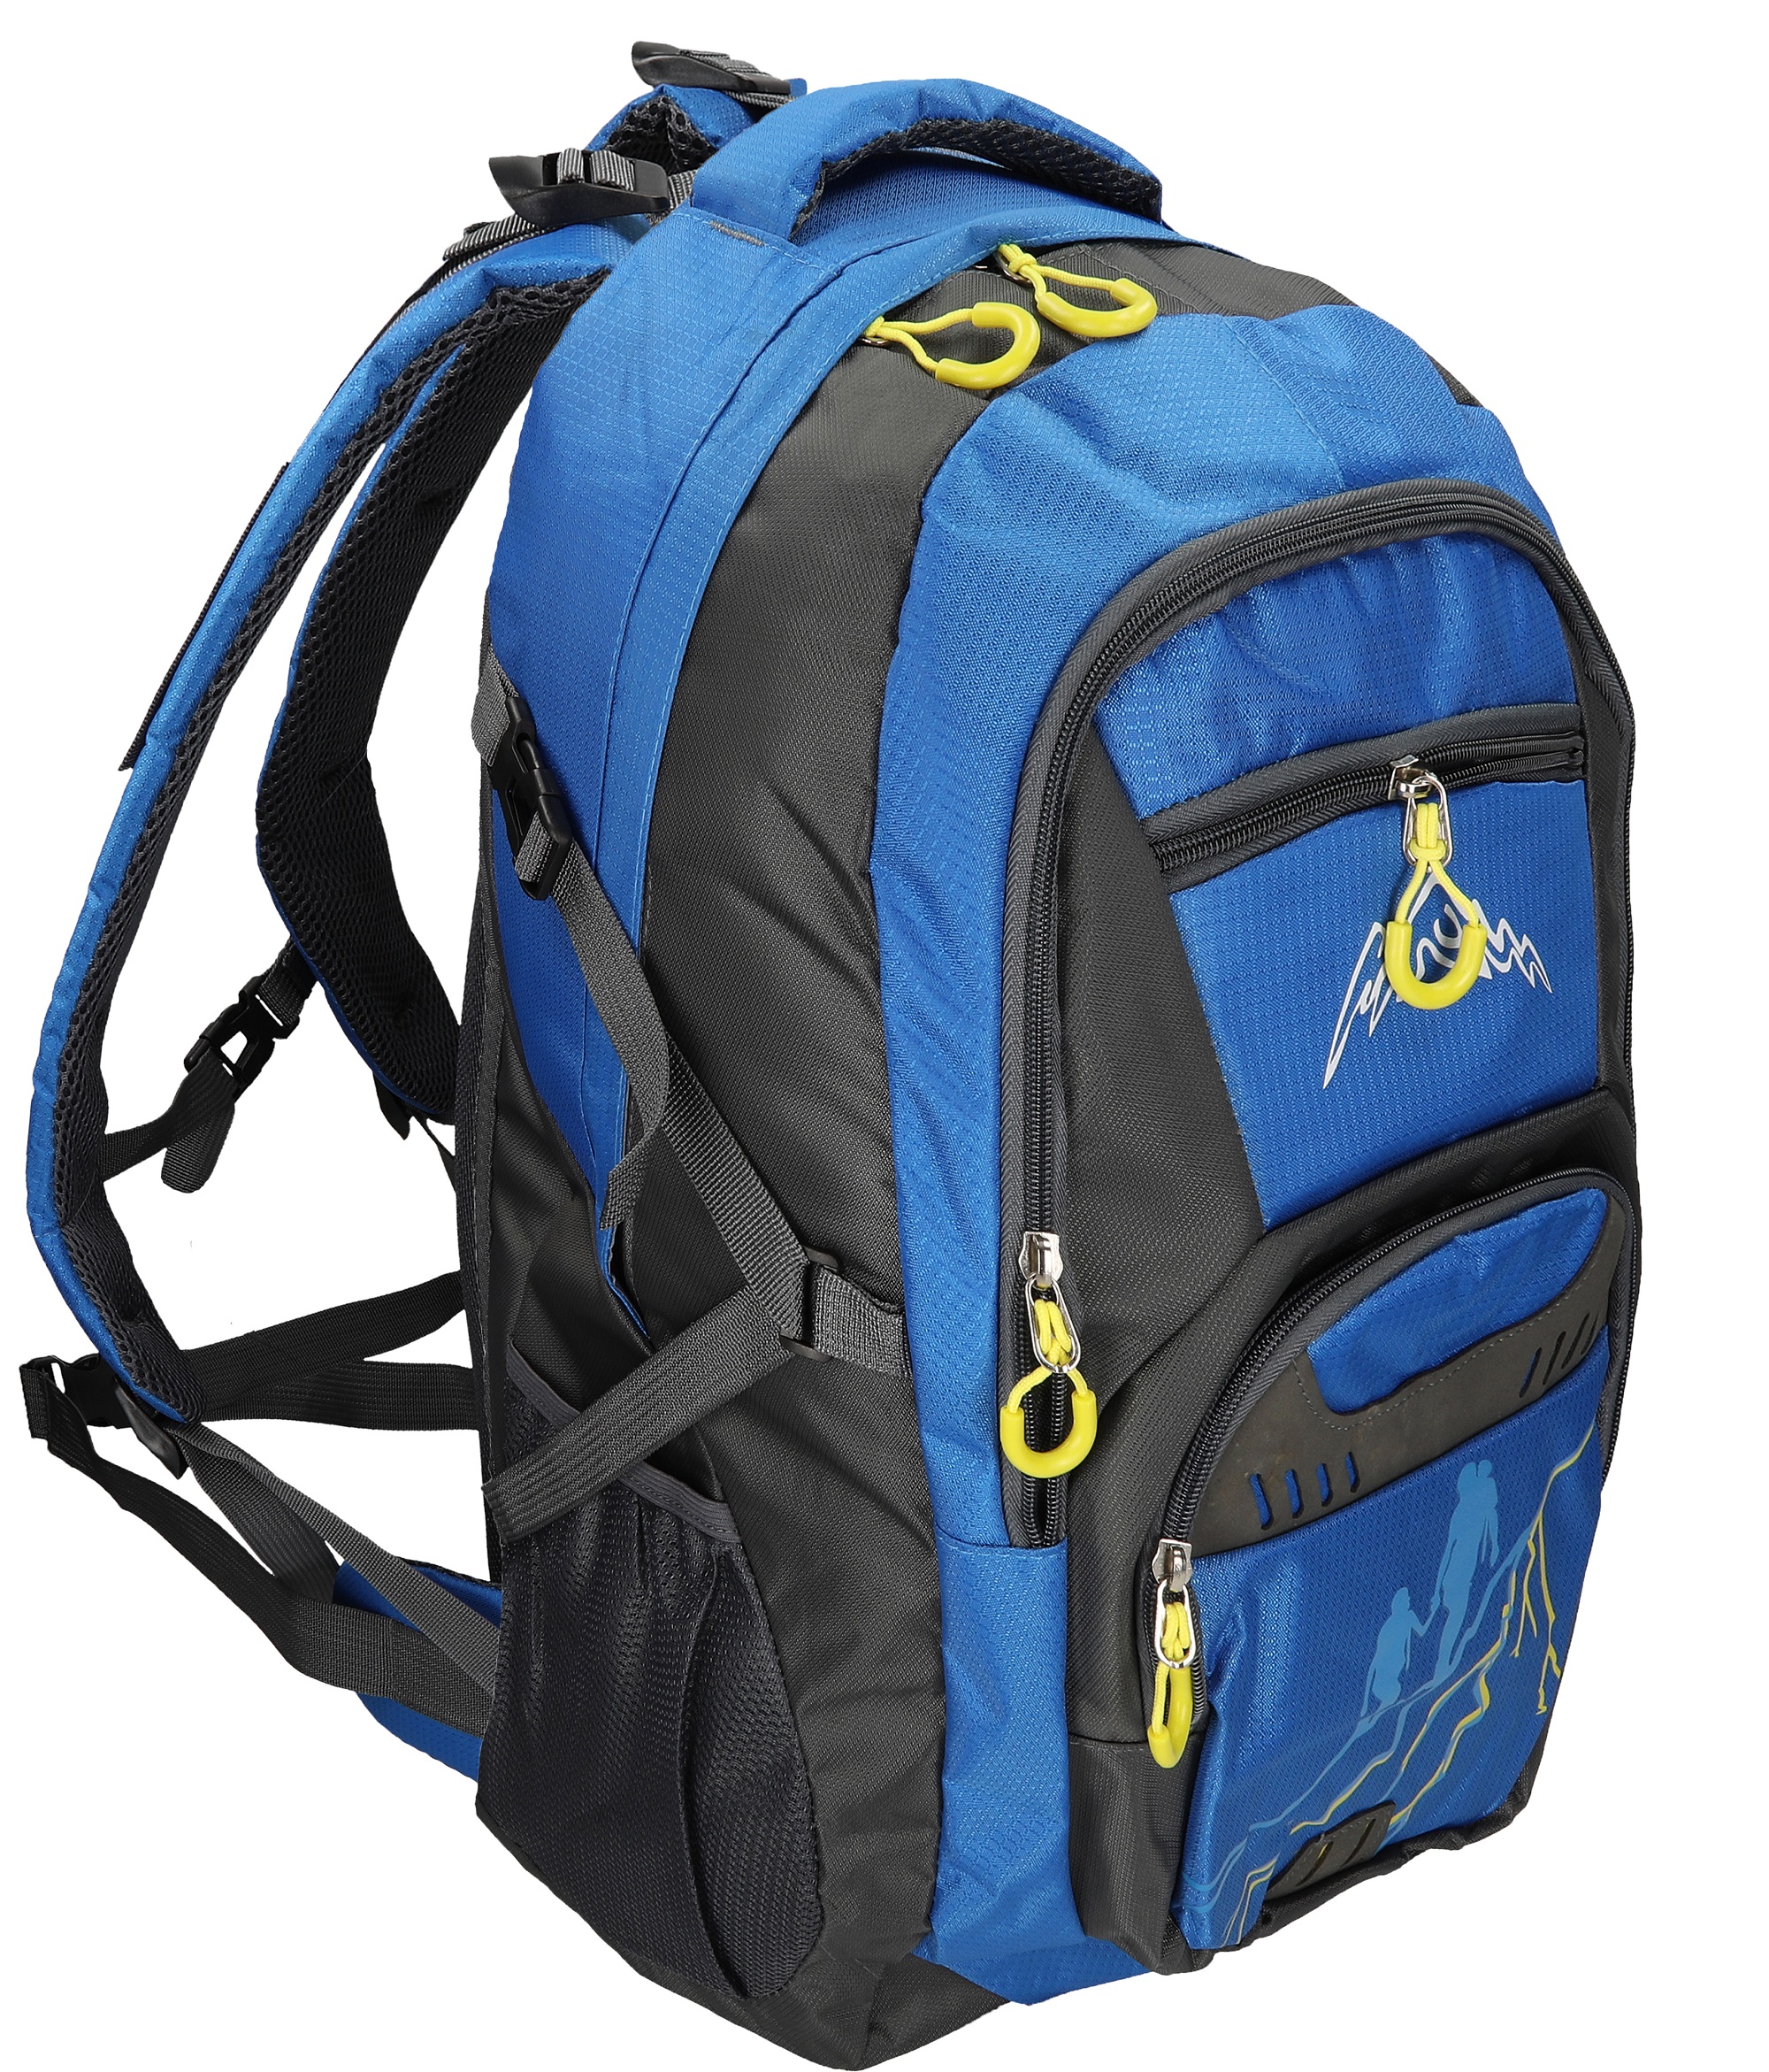 BETZ Mochila Unisex para Viaje Senderismo Camping M/ÜNCHEN con 4 Bolsillos Volumen 37 litros Color Azul